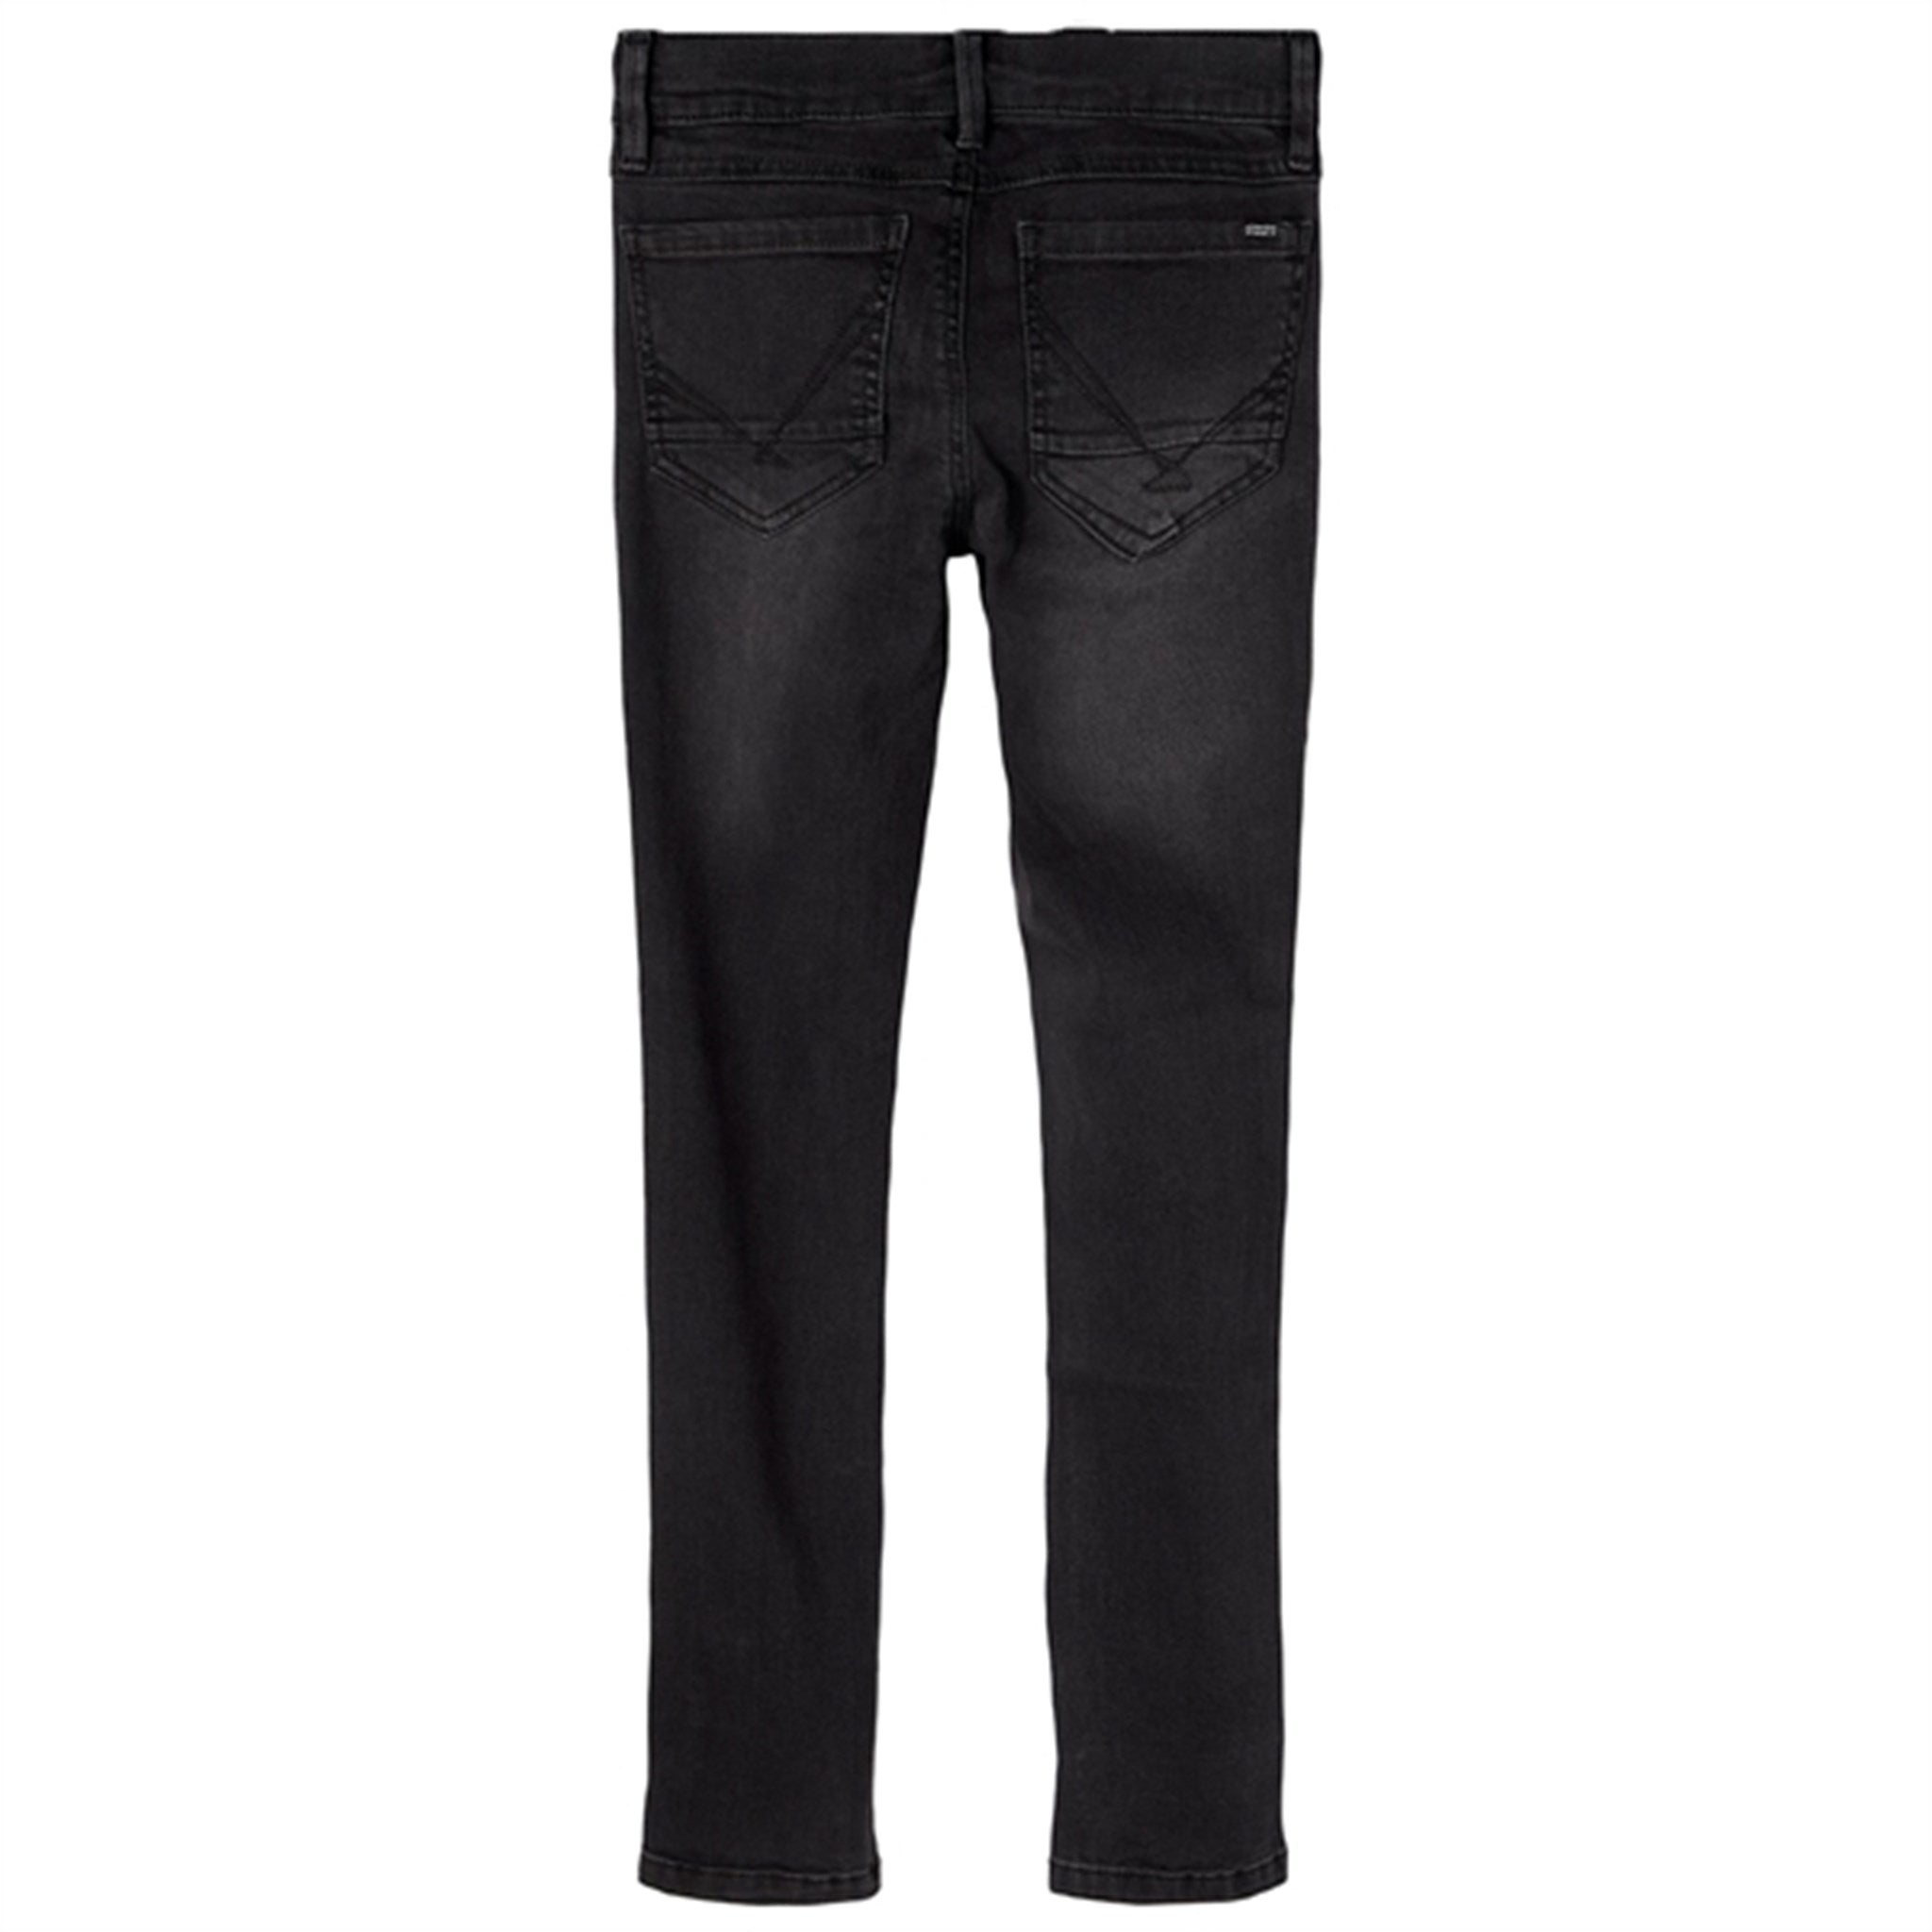 Name it Black Denim Pete Skinny NOOS Jeans 4